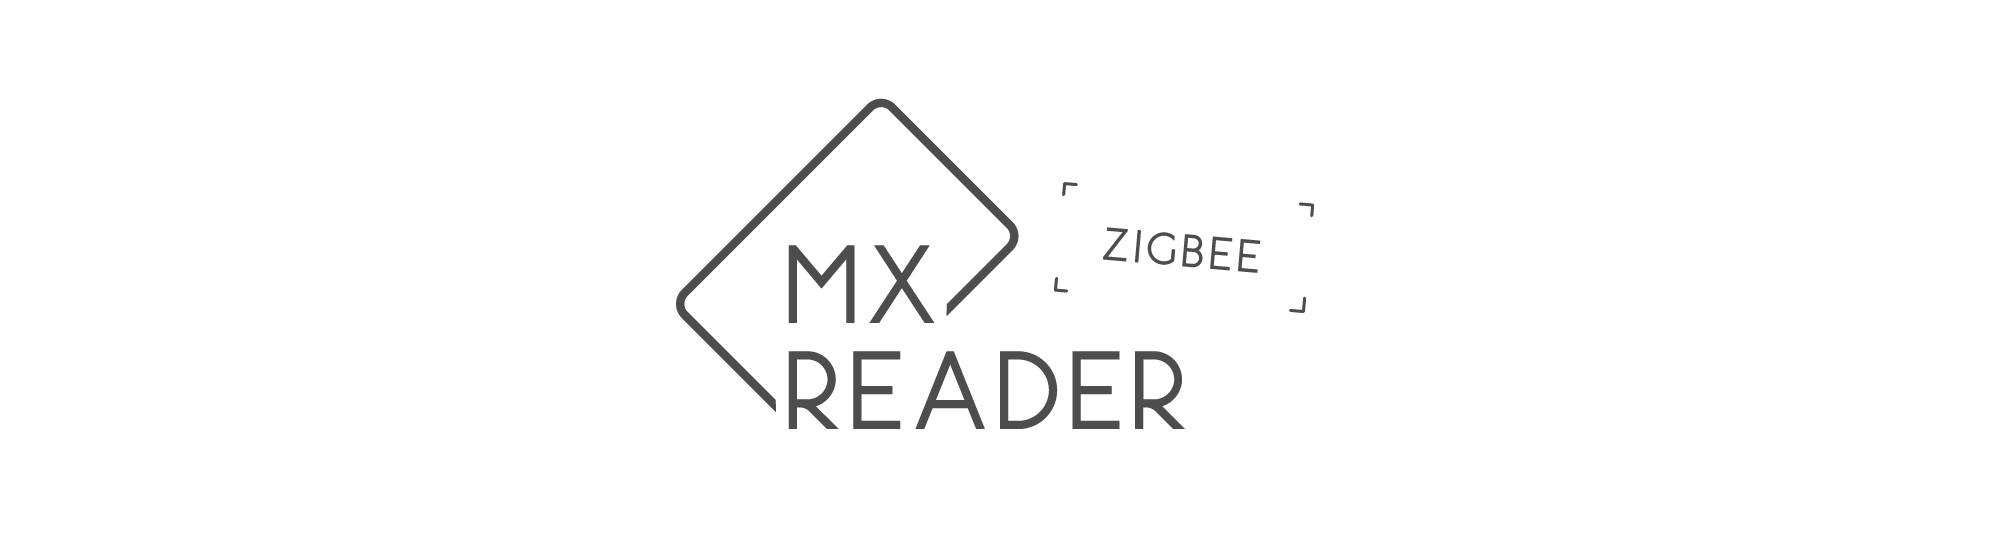 MXreader Zigbee